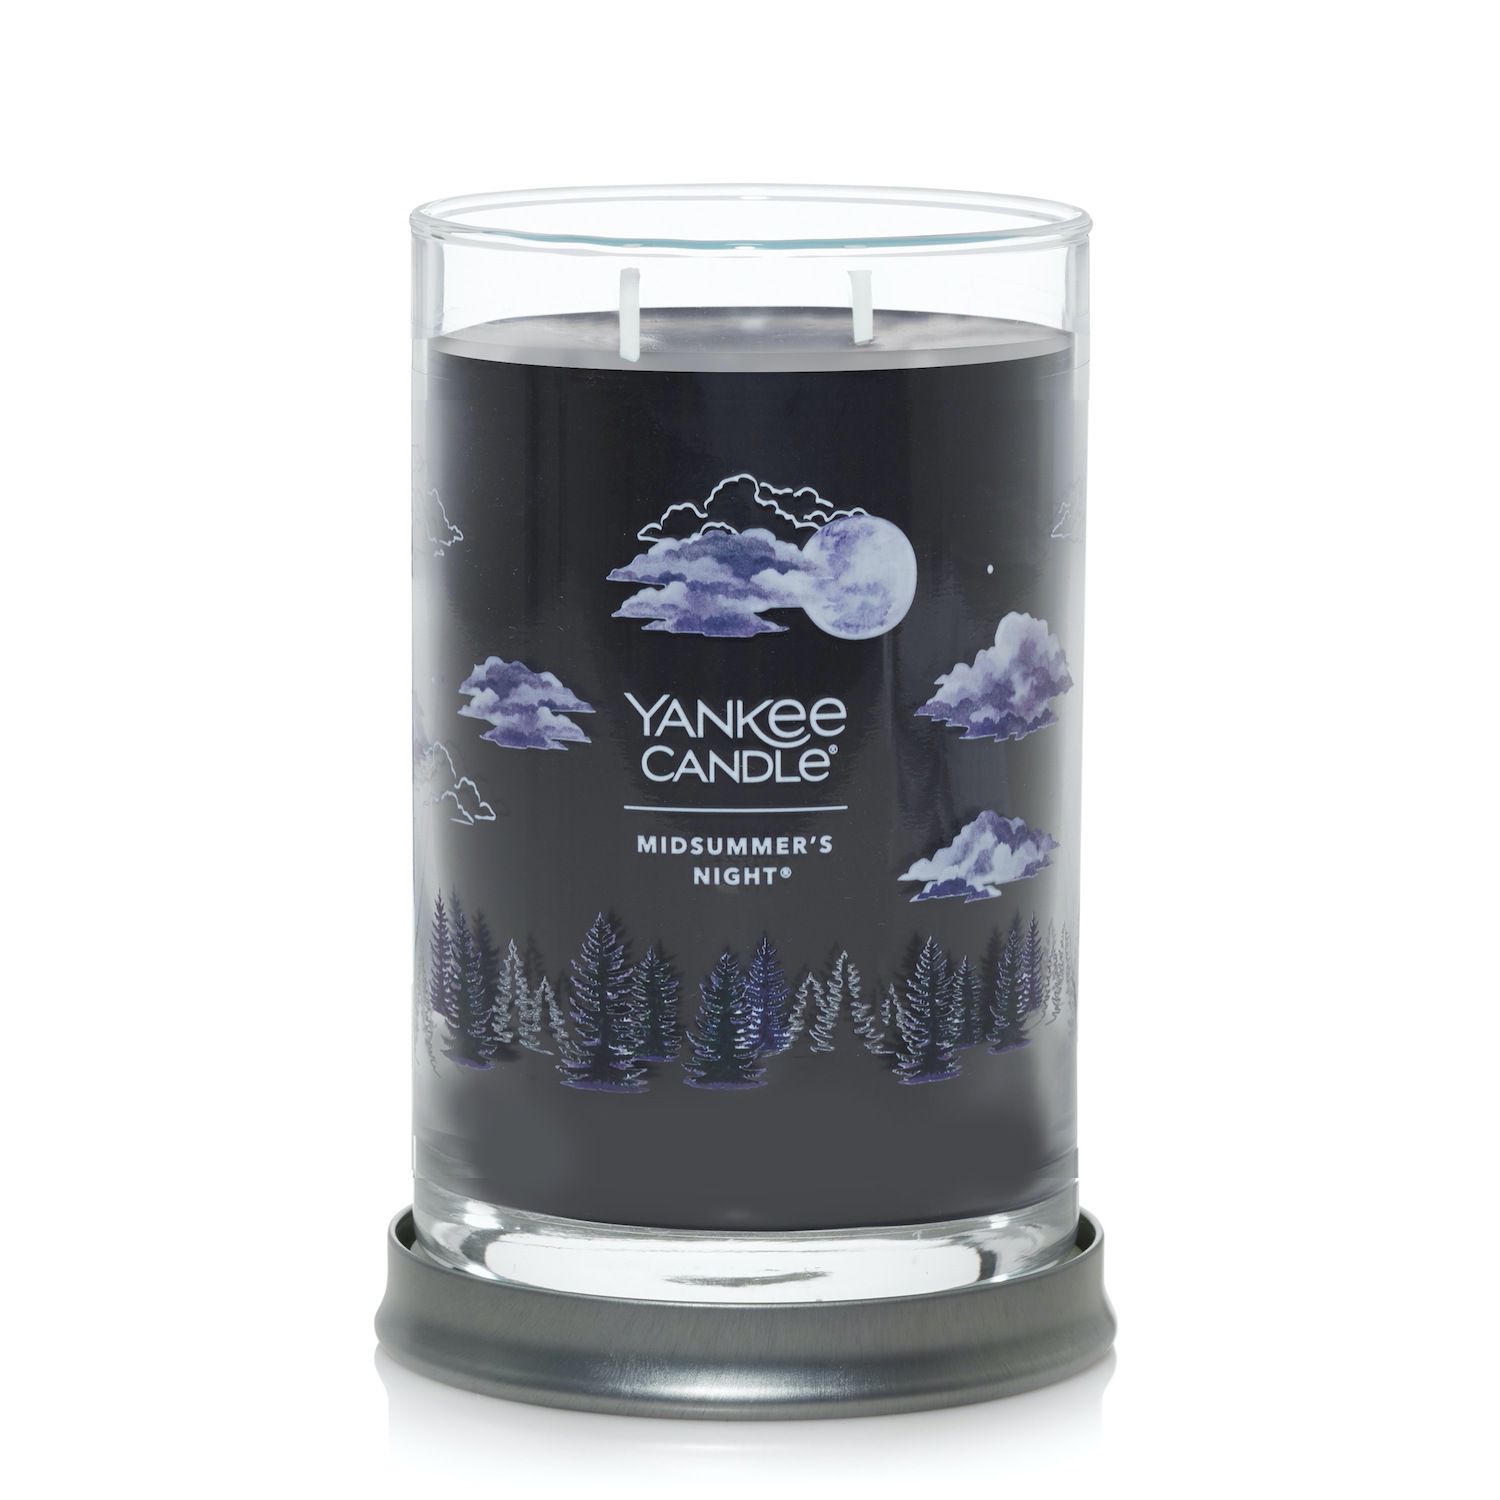 Yankee Candle Midsummer Night Signature стаканная свеча с 2 фитилями свеча ароматизированная yankee candle vibrant saffron высота 8 6 см